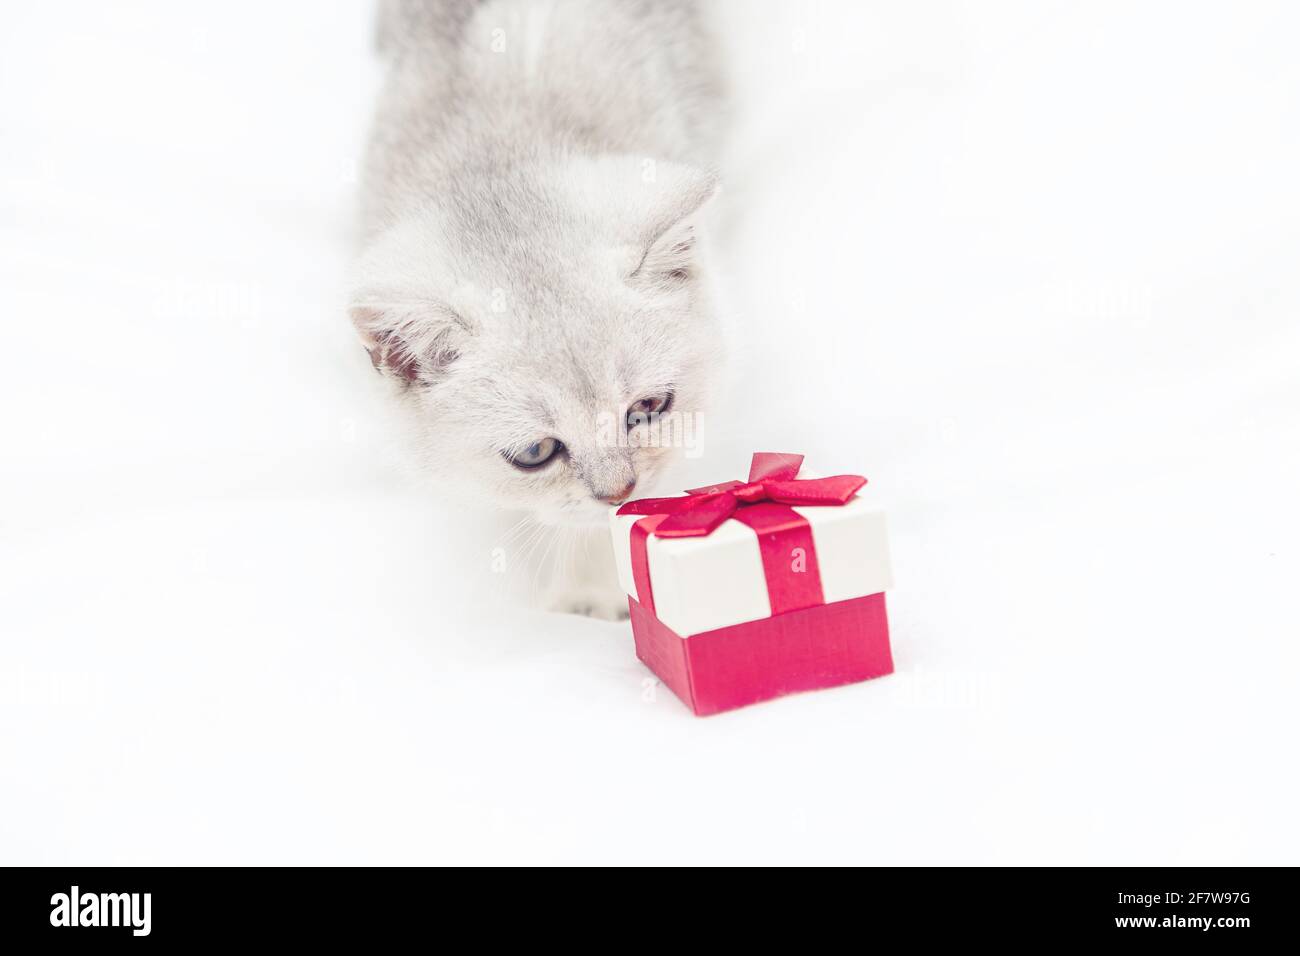 Kleines weißes britisches Kätzchen mit einer roten Geschenkbox auf einer weißen Decke. Witziges, neugieriges Haustier. Speicherplatz kopieren. Stockfoto